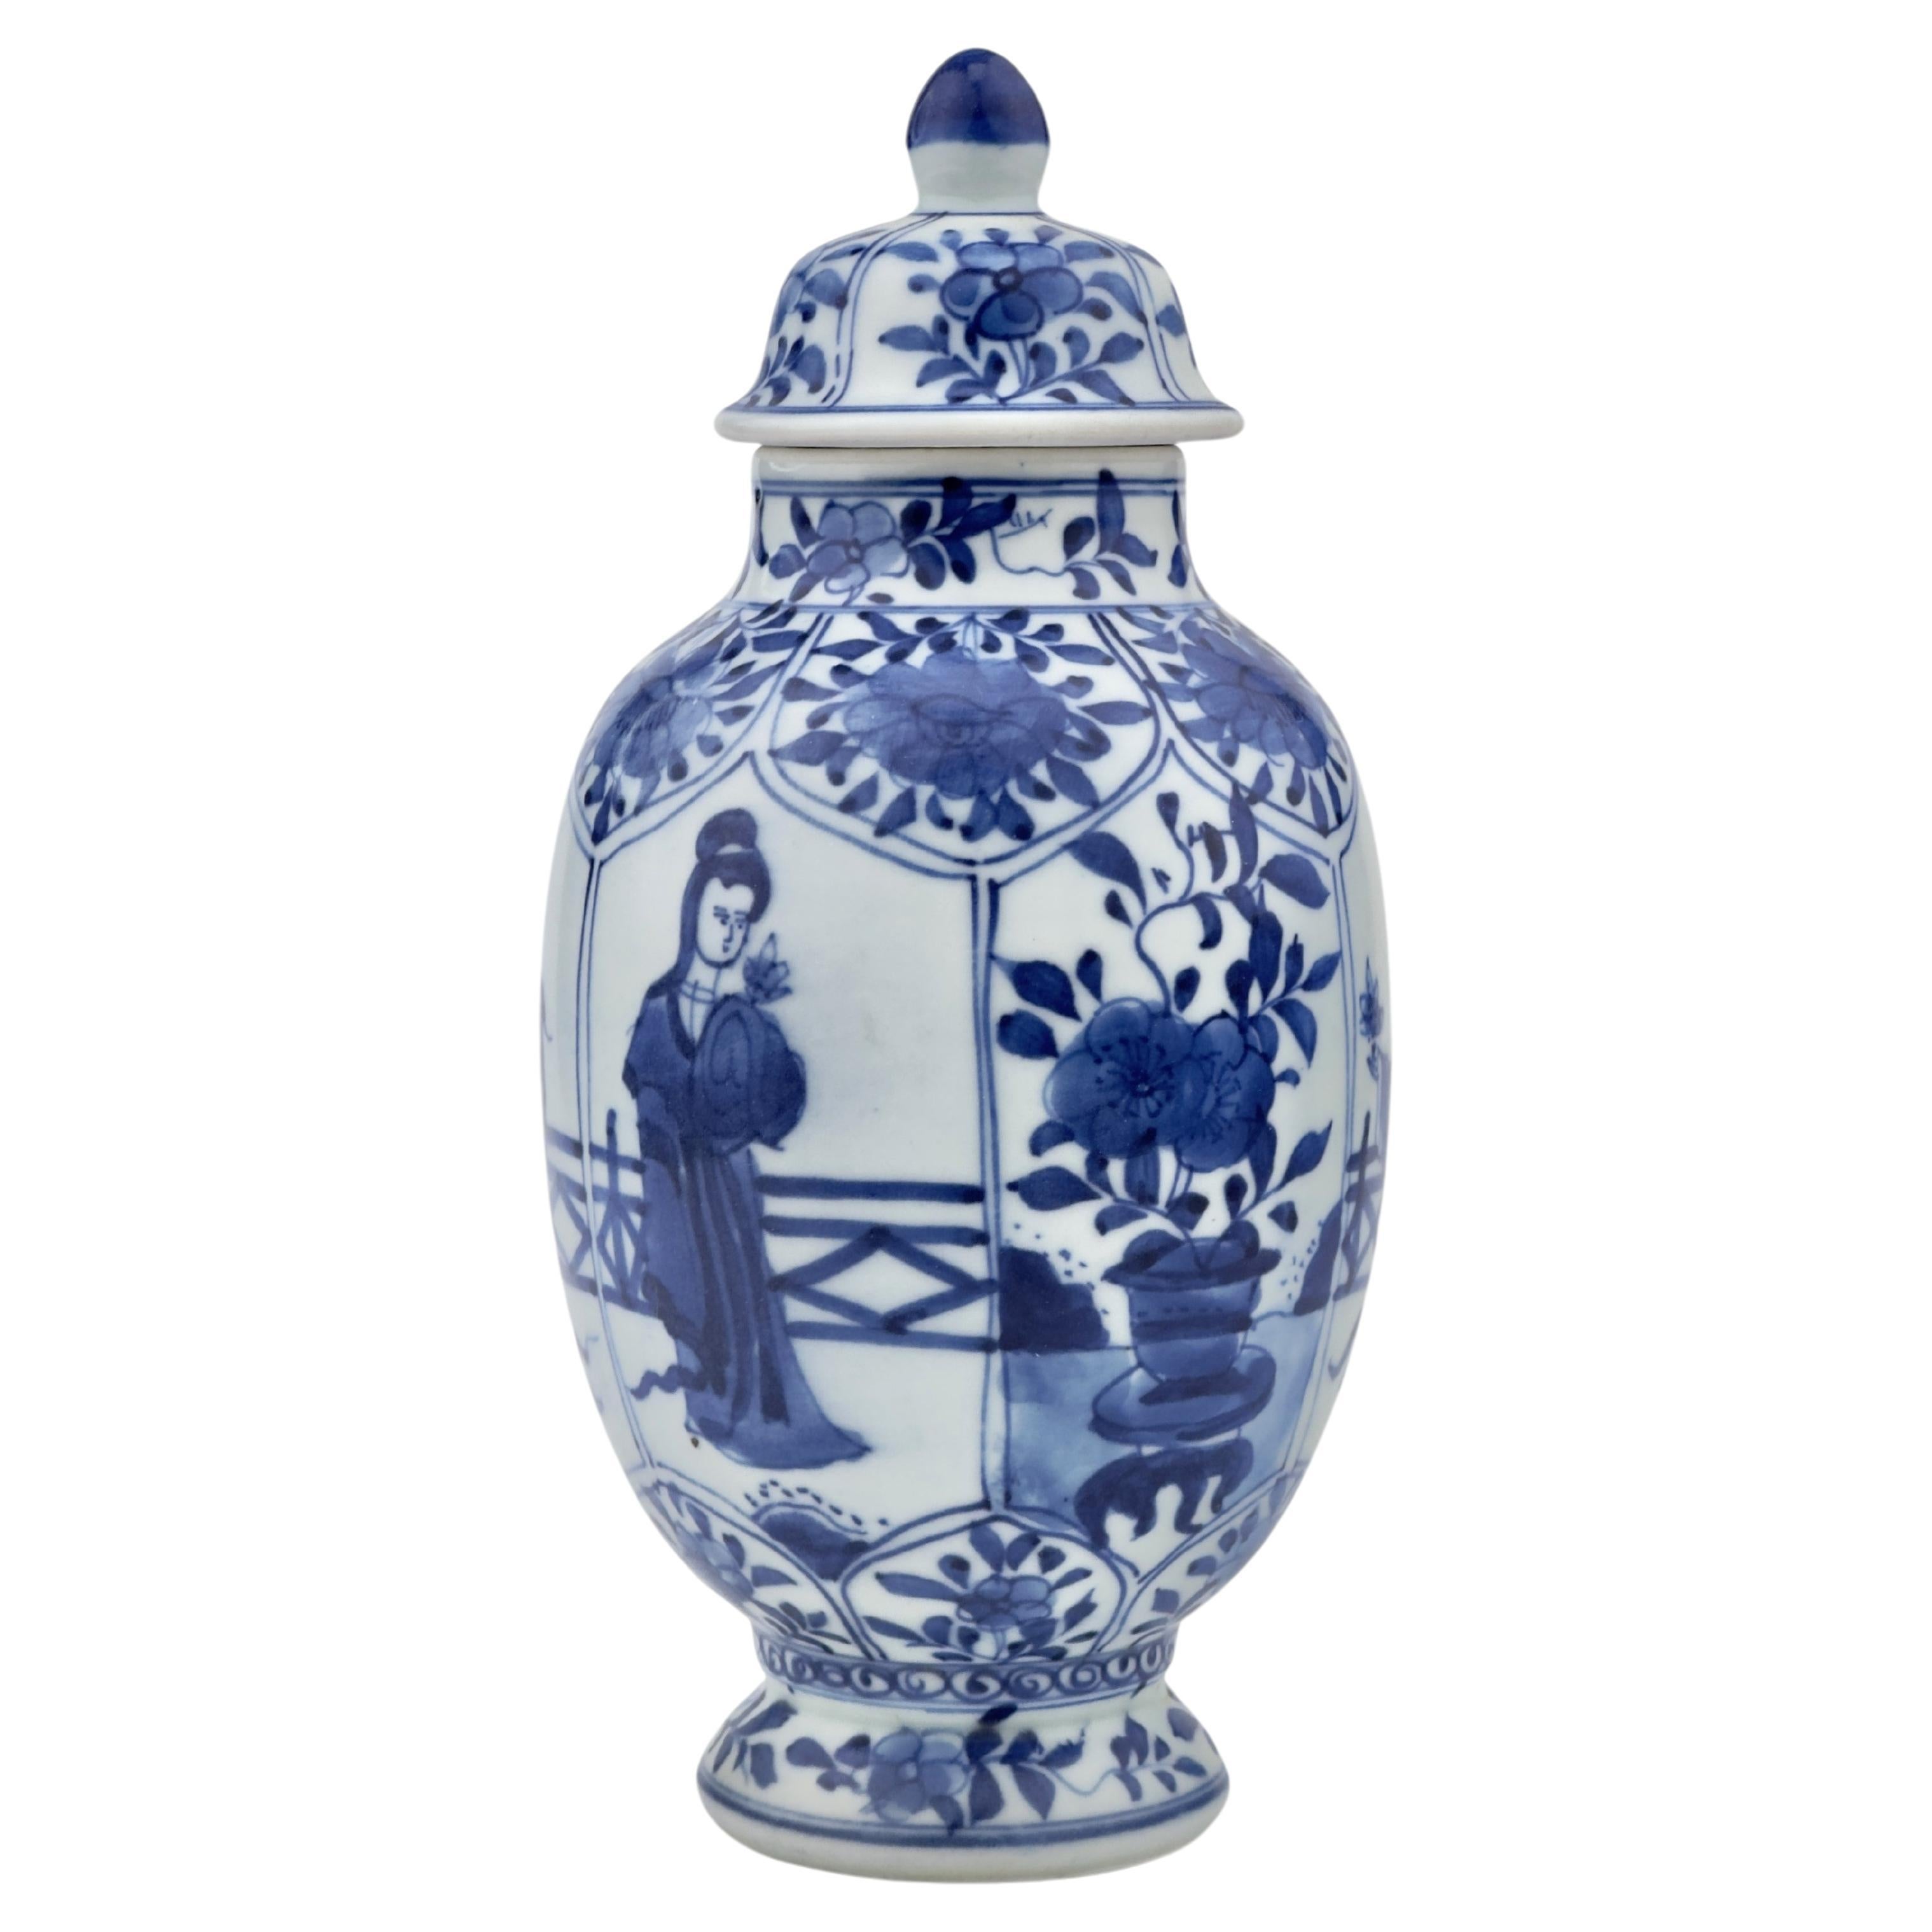 Blau-weiße Vase, Qing Dynasty, Kangxi Ära, CIRCA 1690